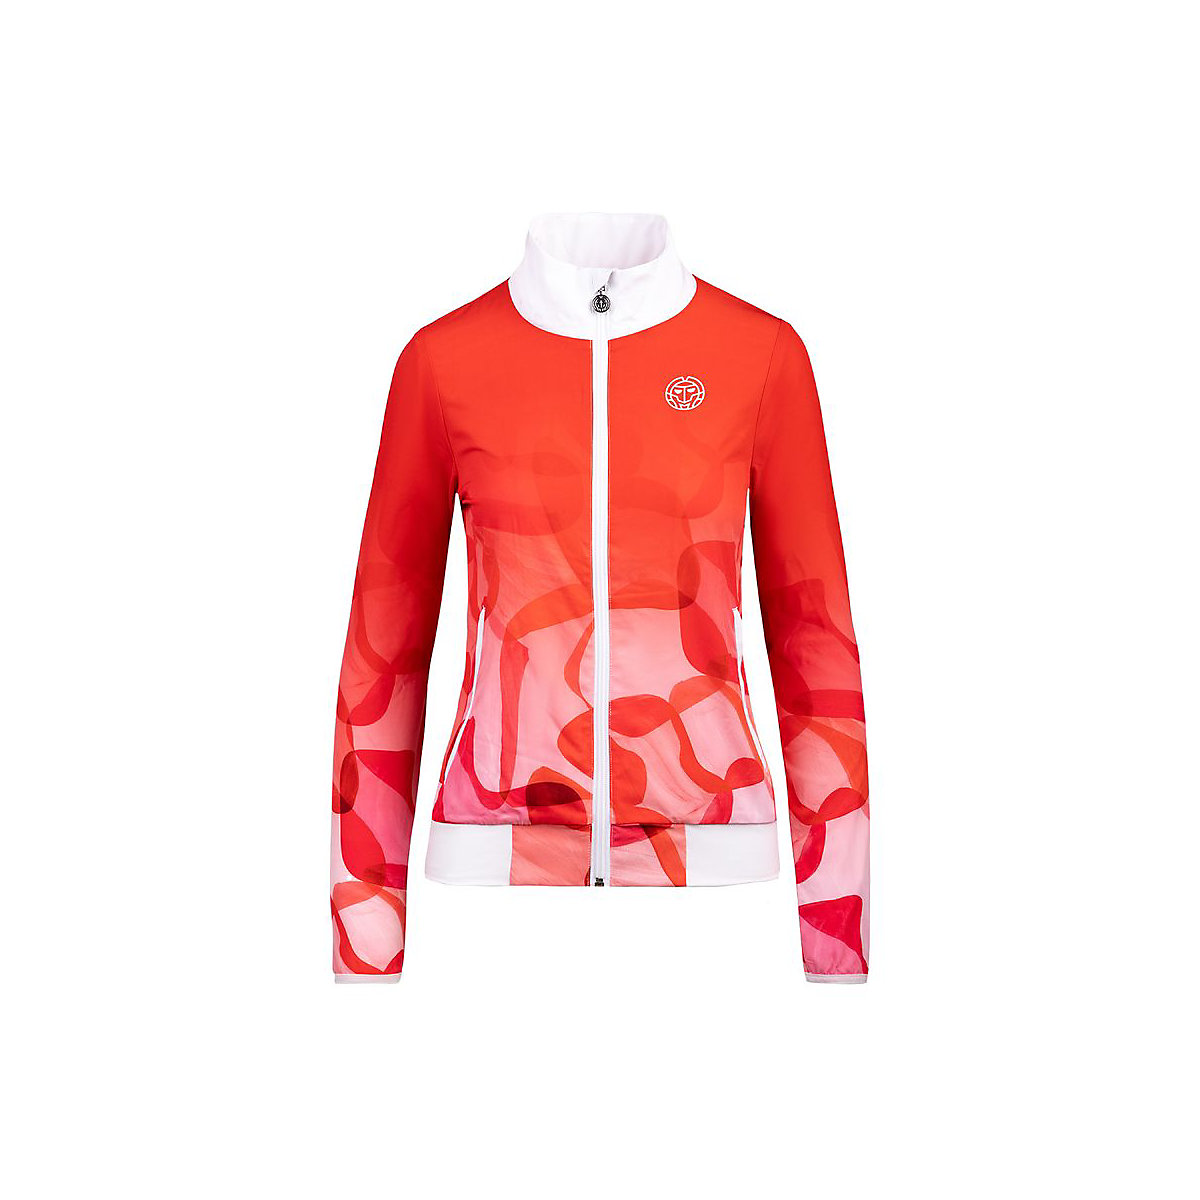 BIDI BADU® Piper Tech Jacket Trainingsjacken für Mädchen rot/orange